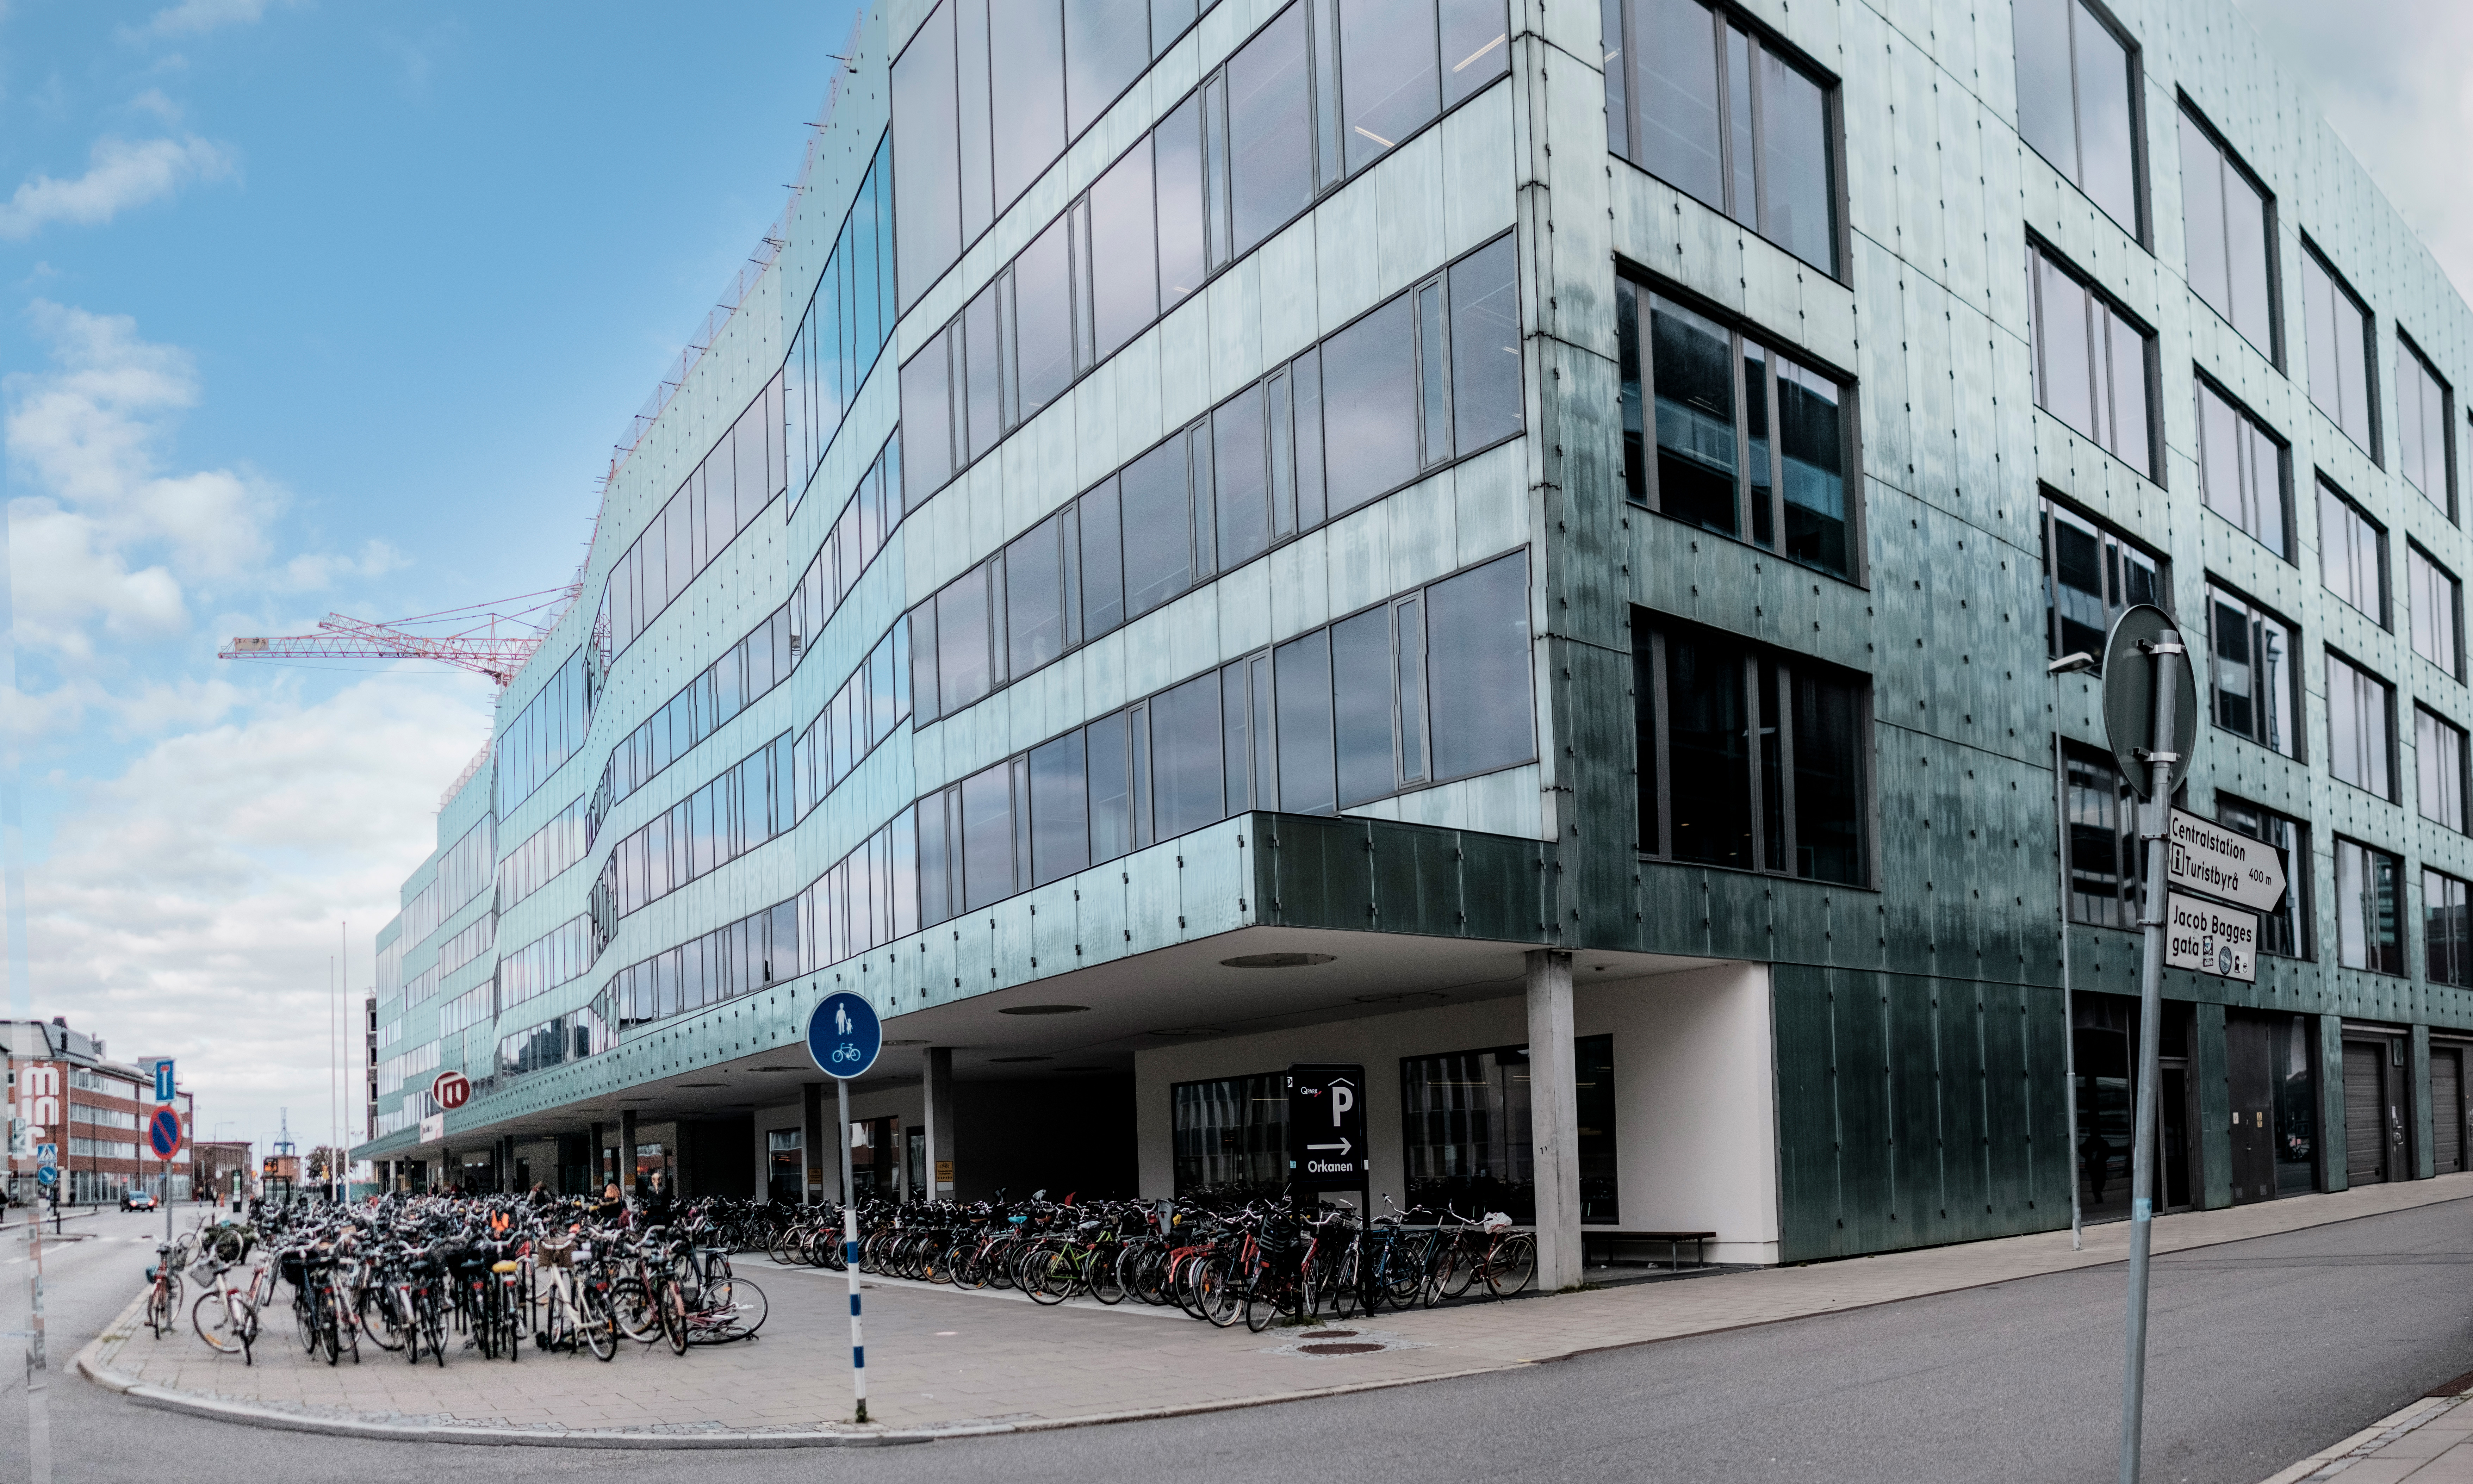 Malmö Universitet håller stängt under dagen på grund av ett hot som kommit på mejl. I samråd med Polisen har ledningen valt att inte kommentera hotbilden. På bilden syns universitetets fakultet för lärande och samhälle.